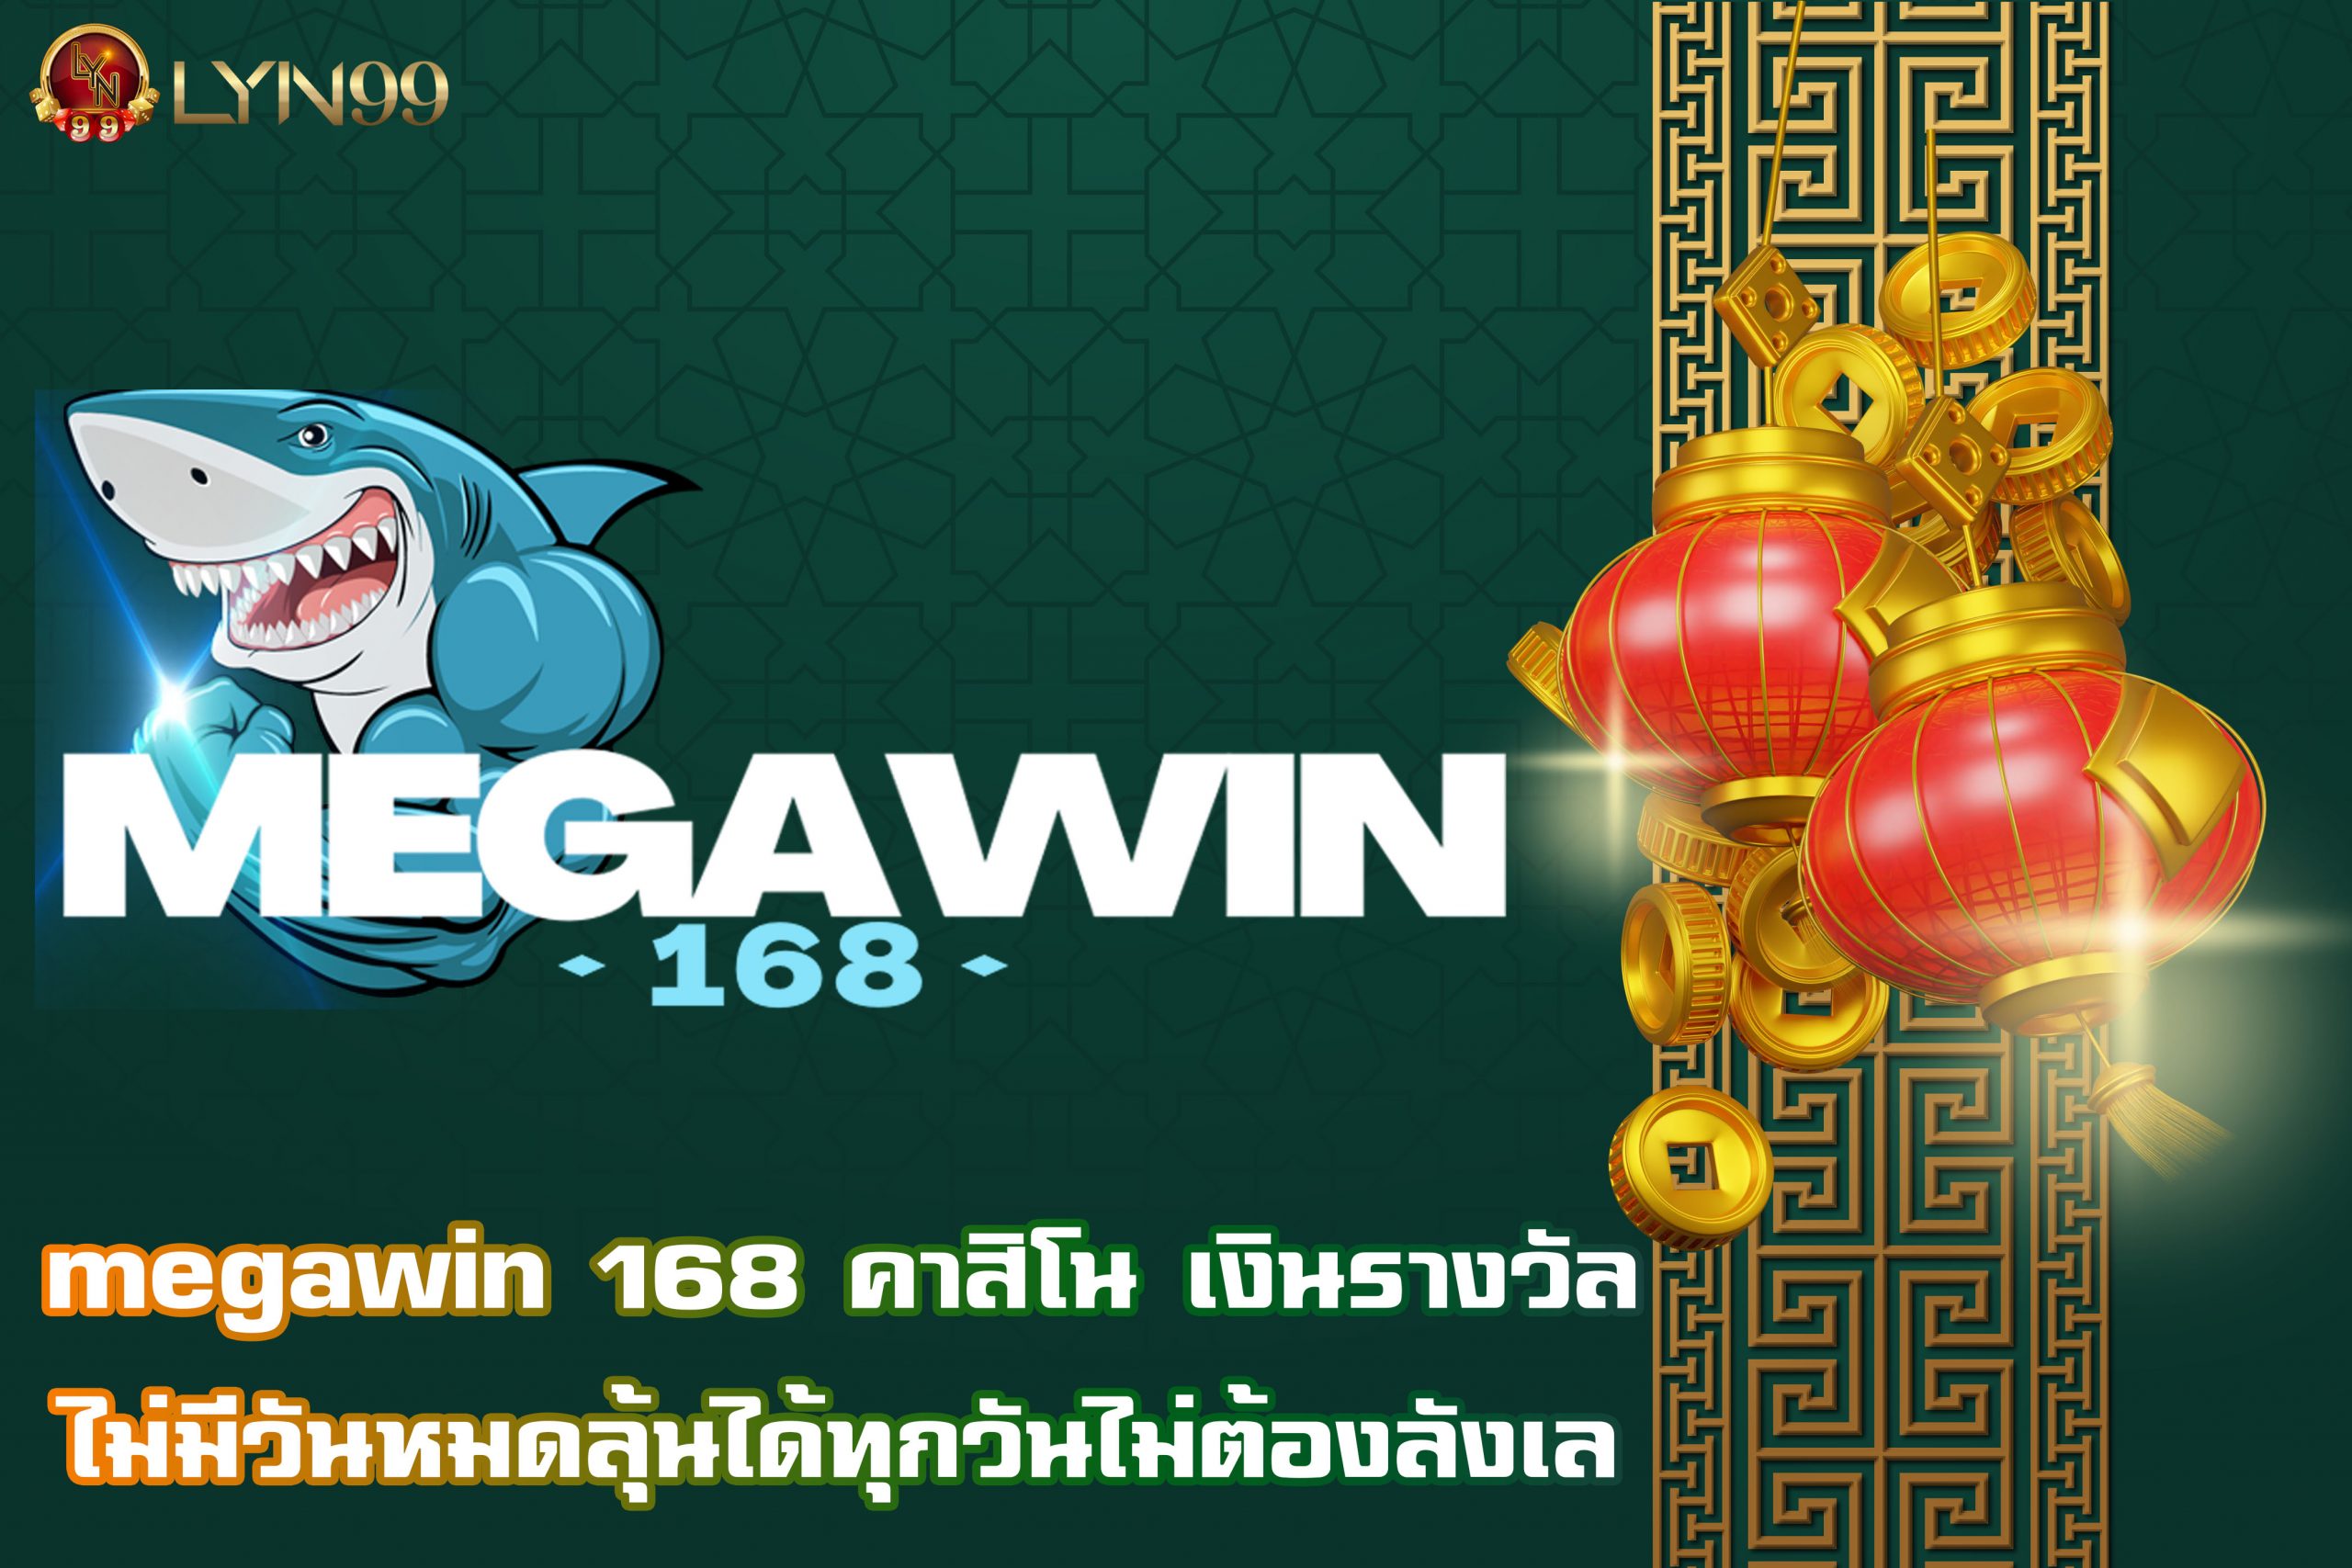 megawin 168